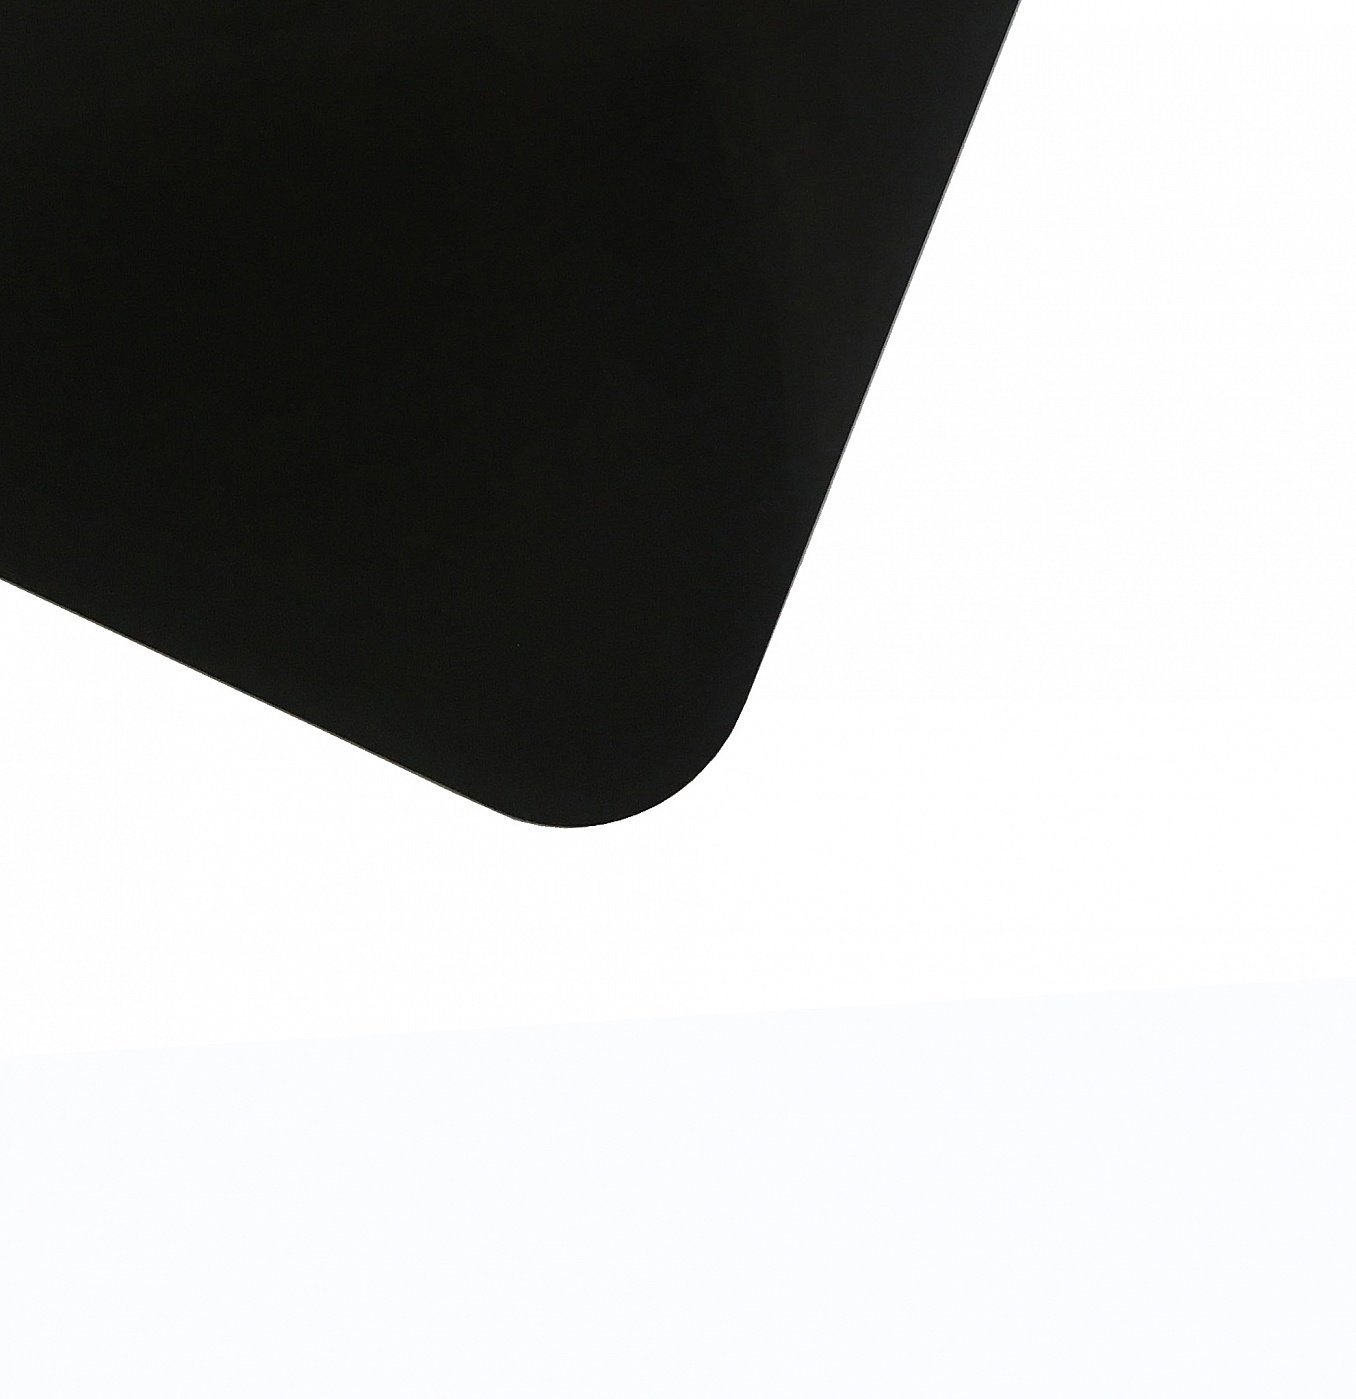 Планшет для пленэра из оргстекла 3 мм, под лист размера А4, цвет черный планшет для рисования песком звёздная галактика